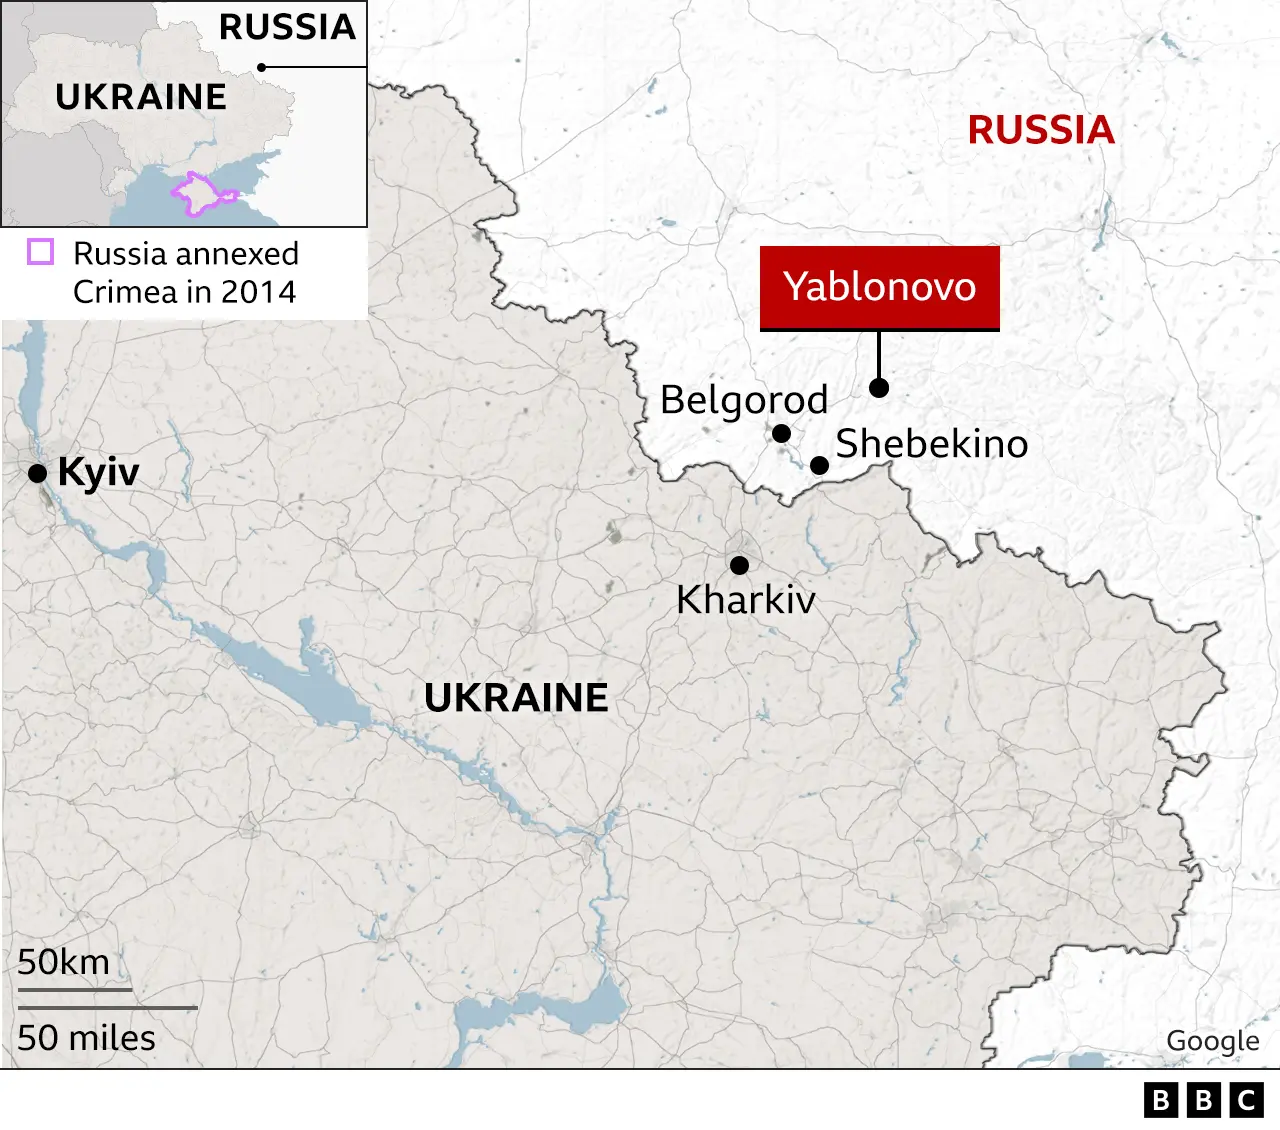 Mapa da Rússia mostrando a localização do acidente e a proximidade da Ucrânia